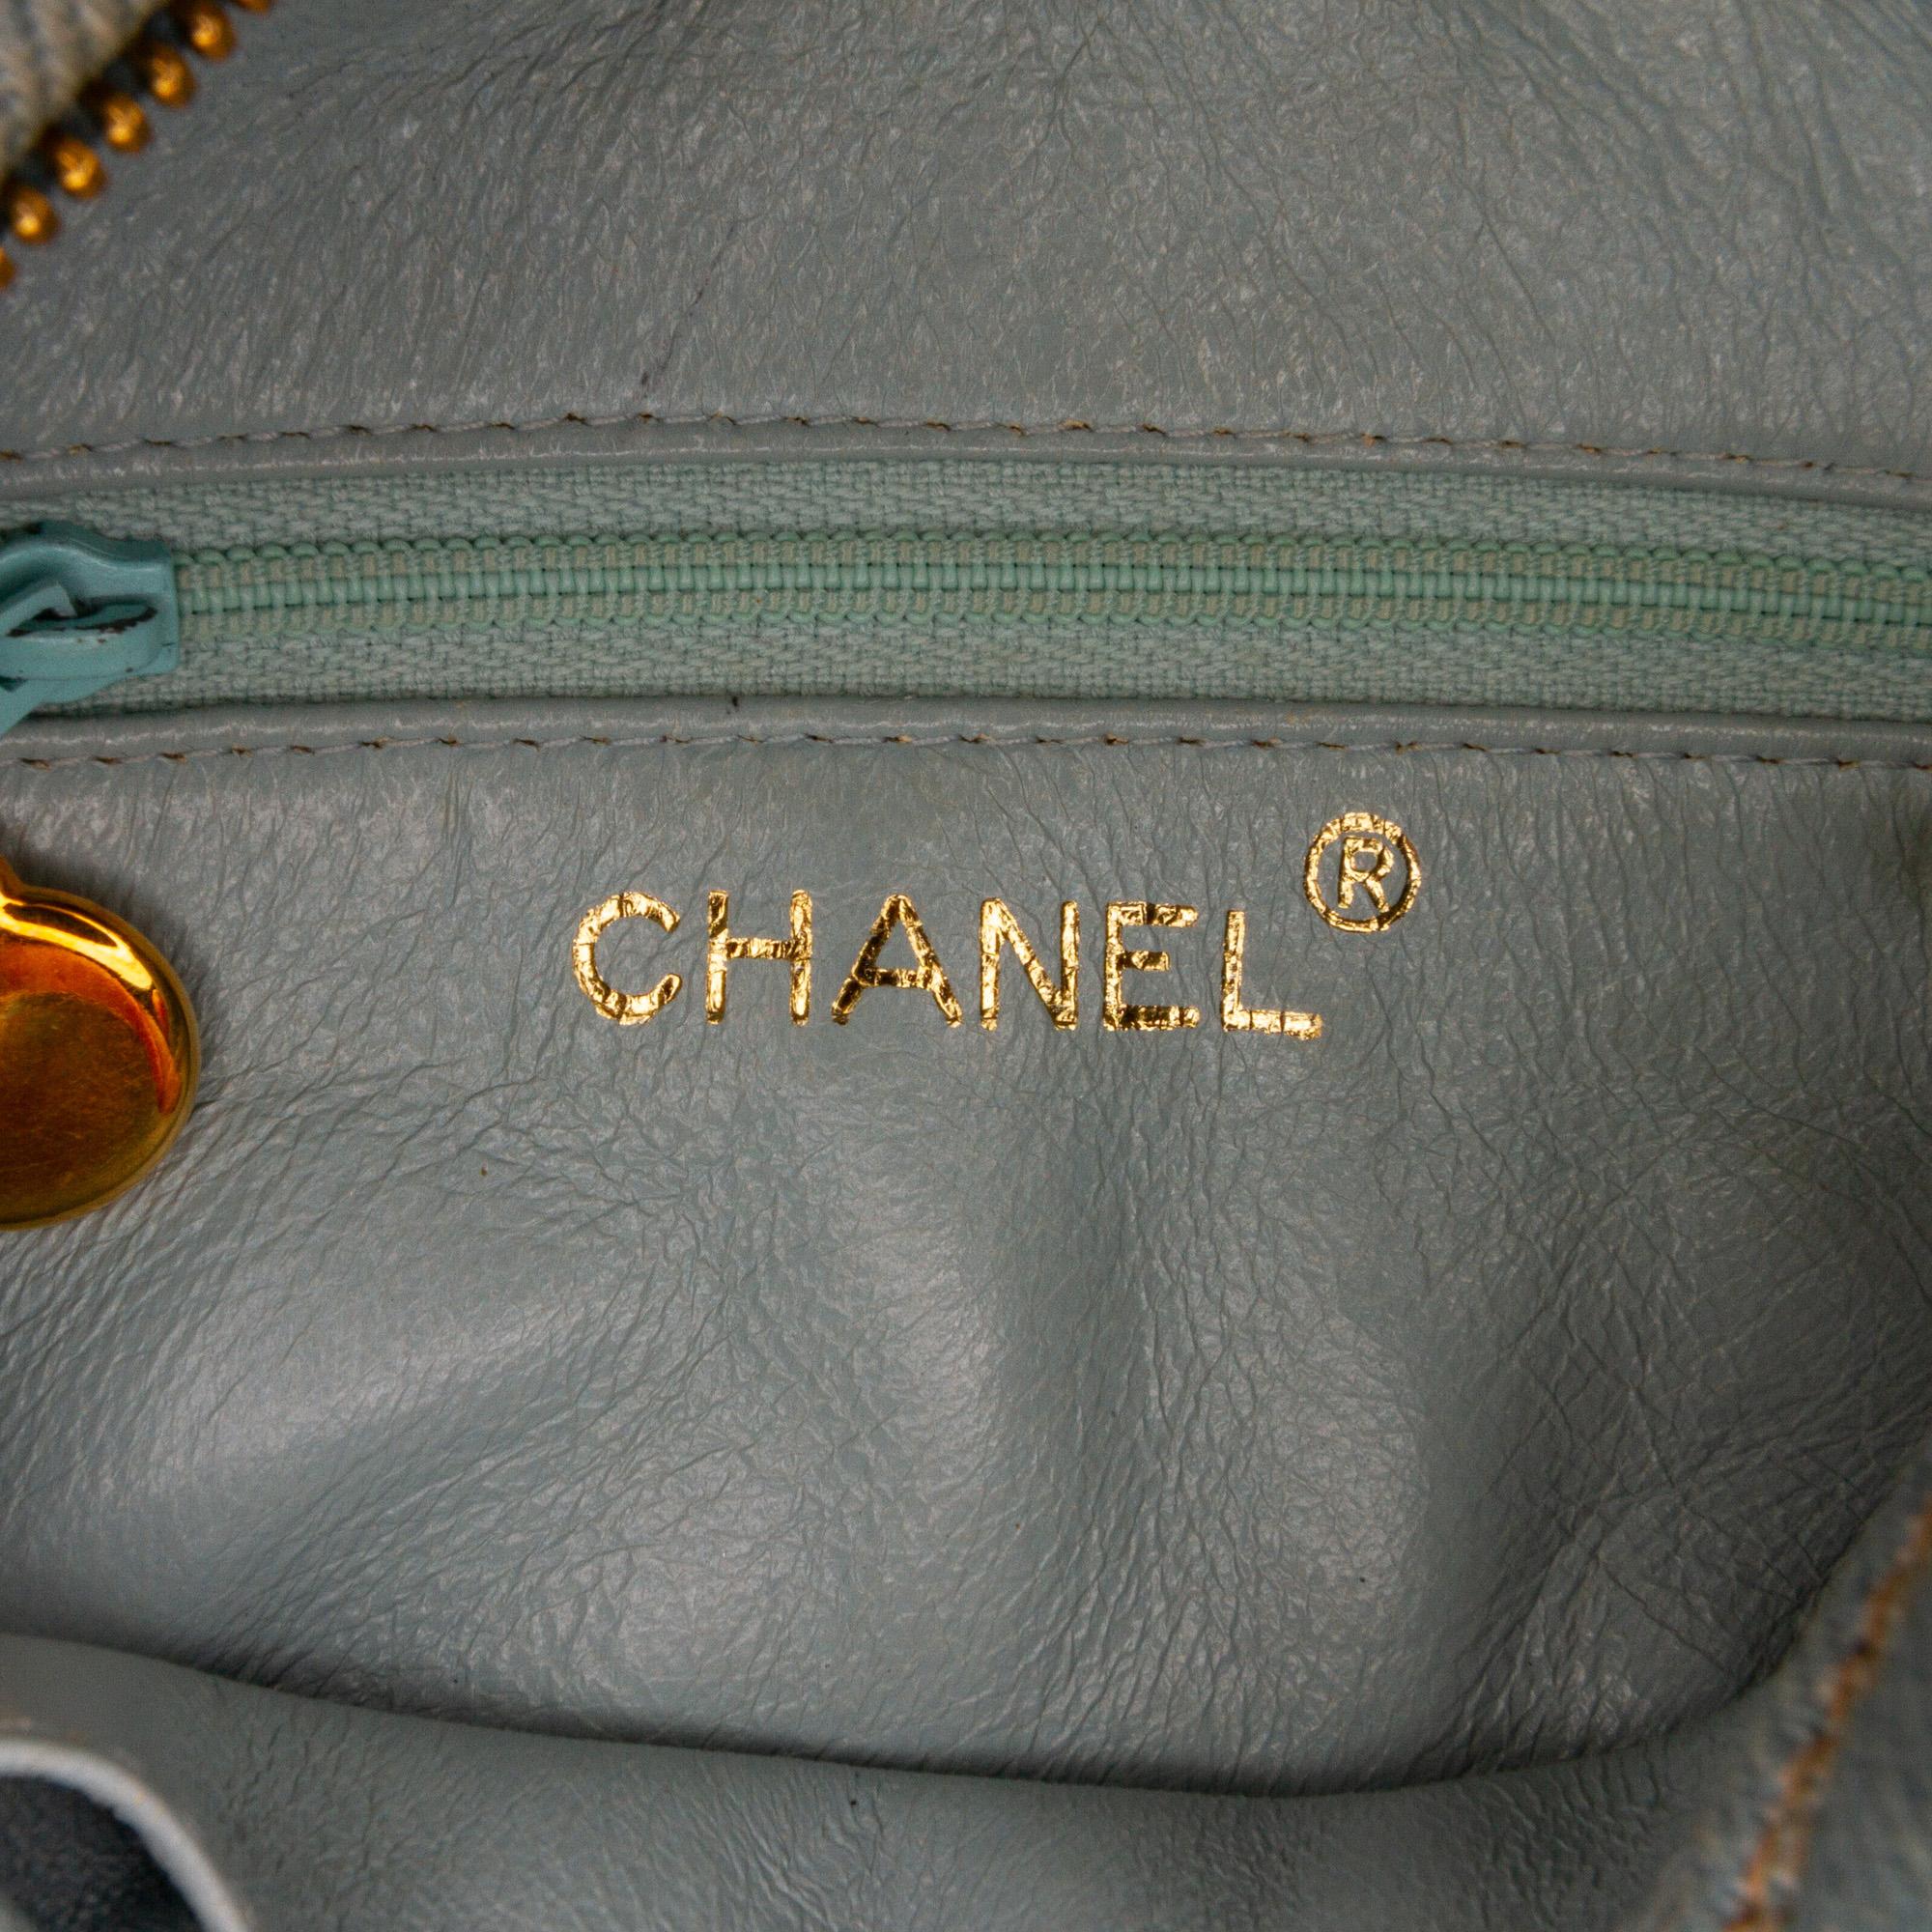 Chanel Blue CC Denim Crossbody Bag